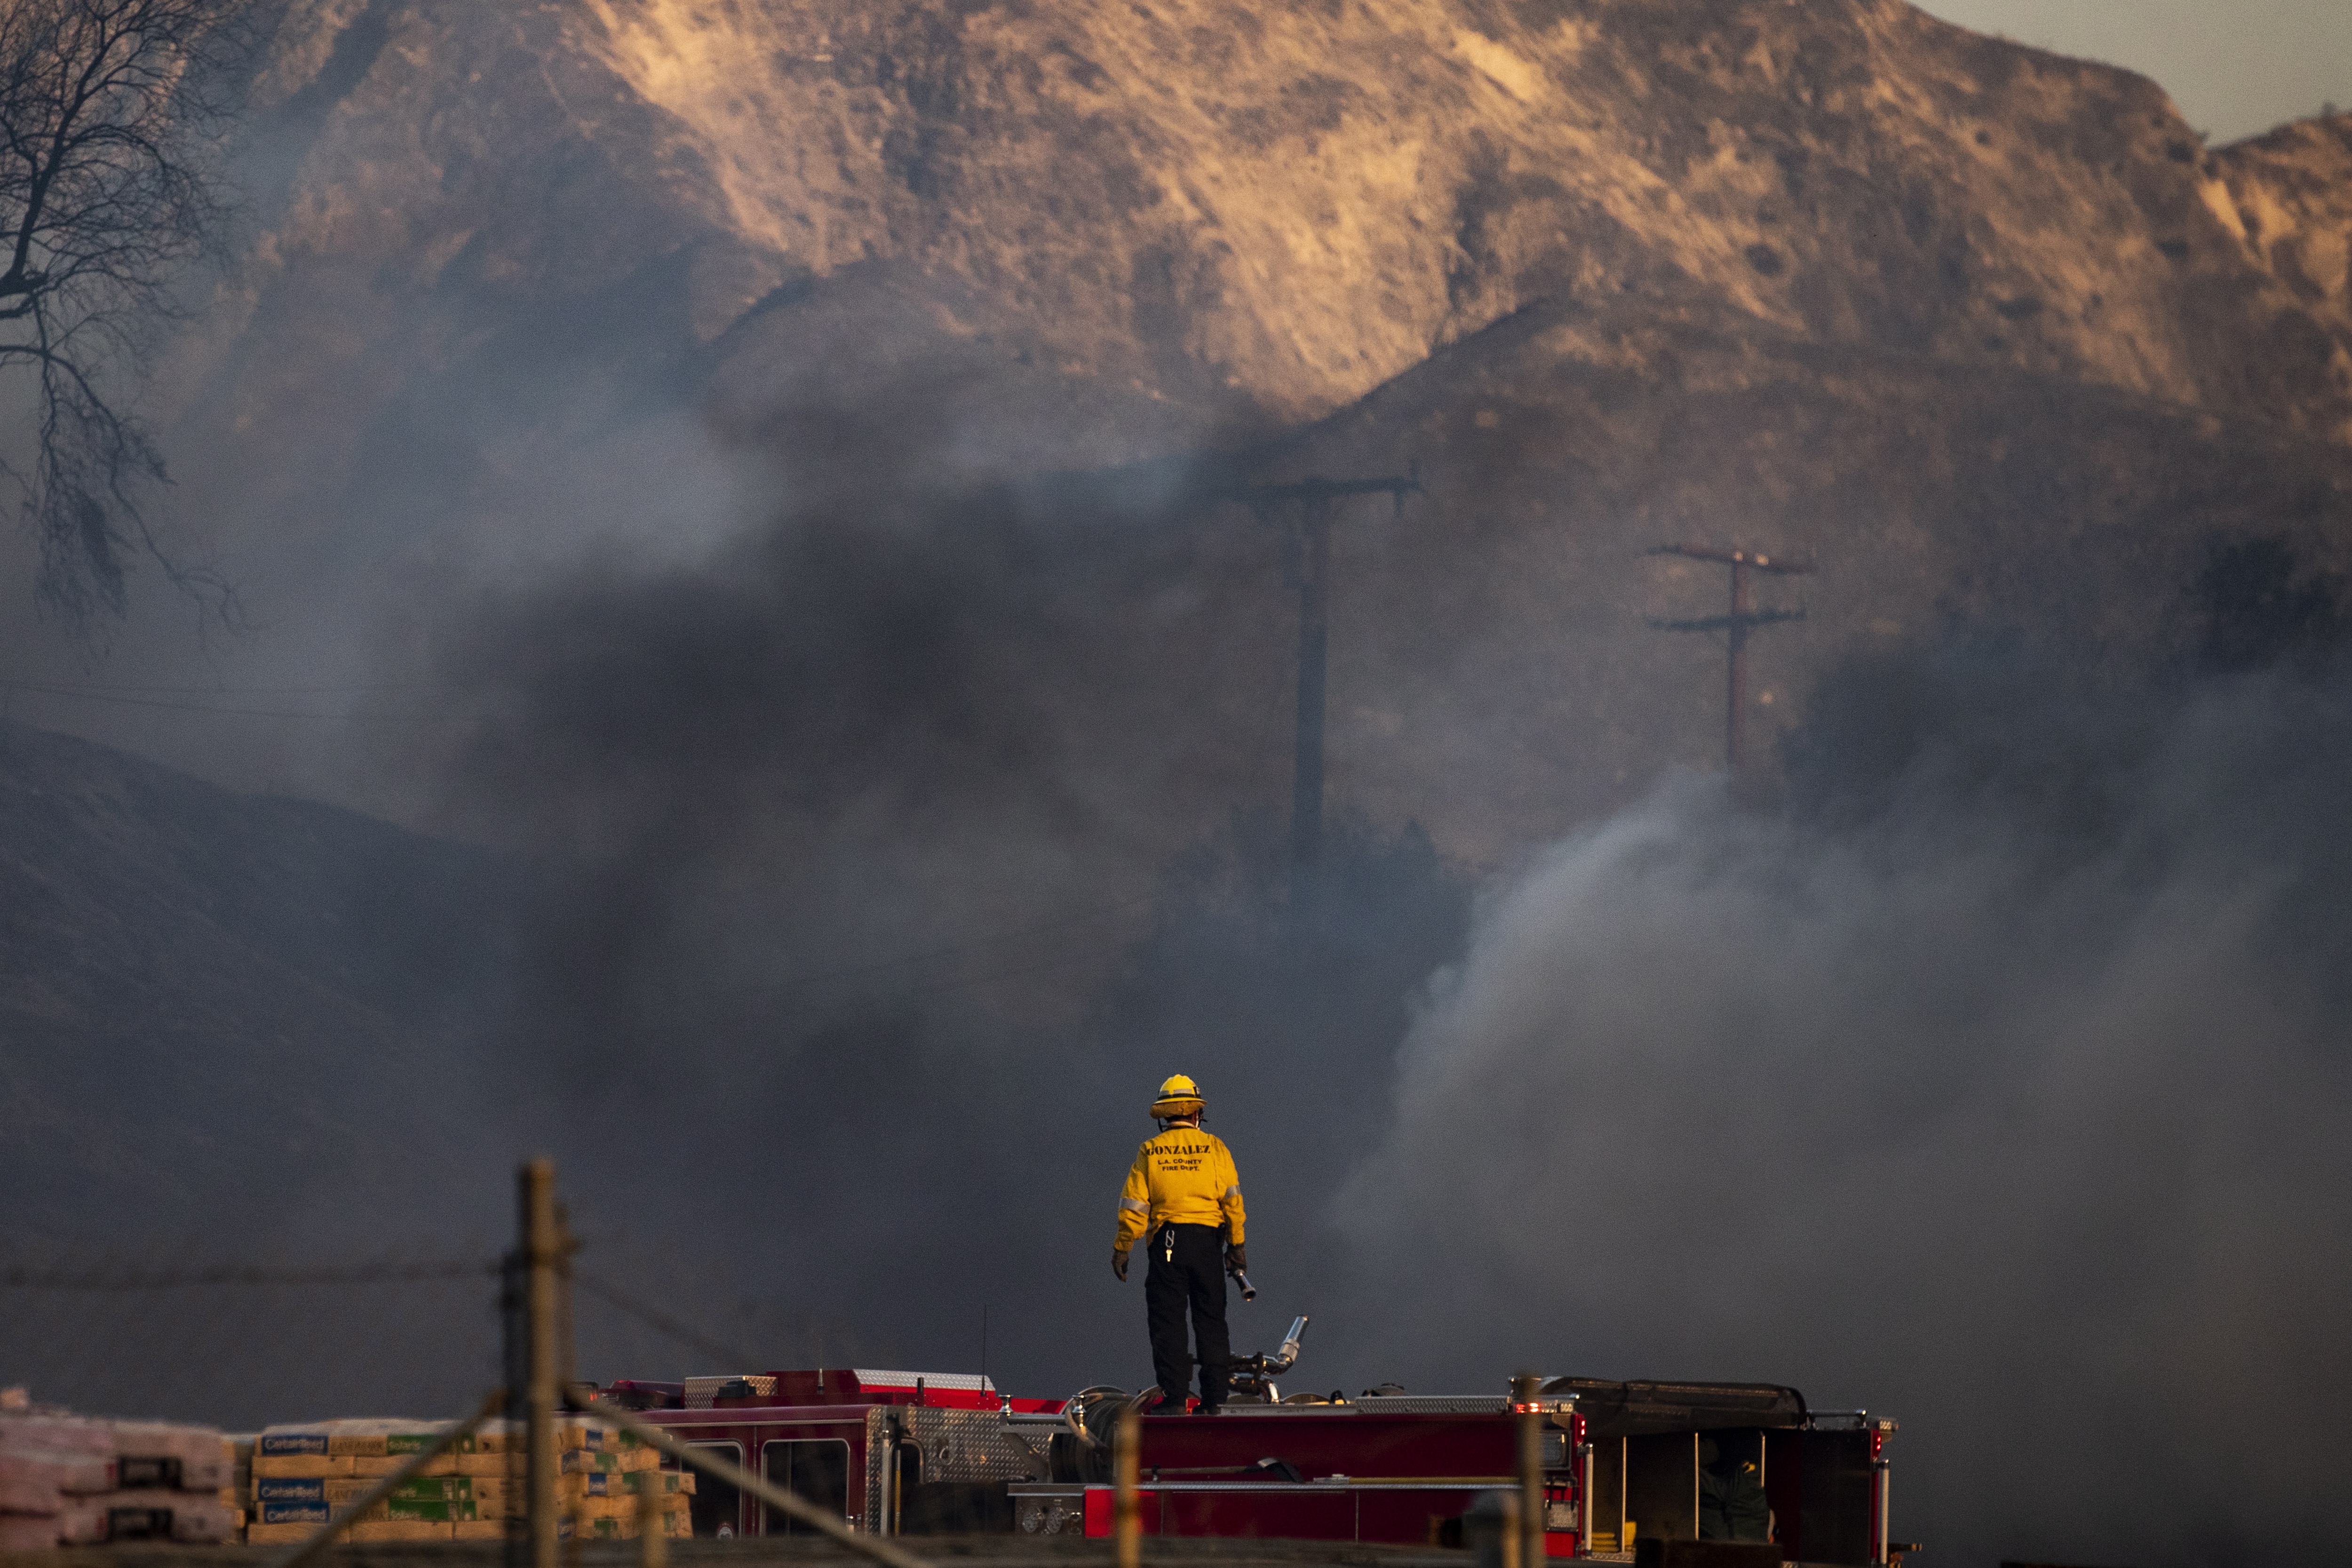 Няколко къщи са изгорели в четвъртък, след като два пожара, подхранвани от силни ветрове, изпепелиха сухи храсталаци в района на град Санта Кларита. Не се съобщава за пострадали хора.